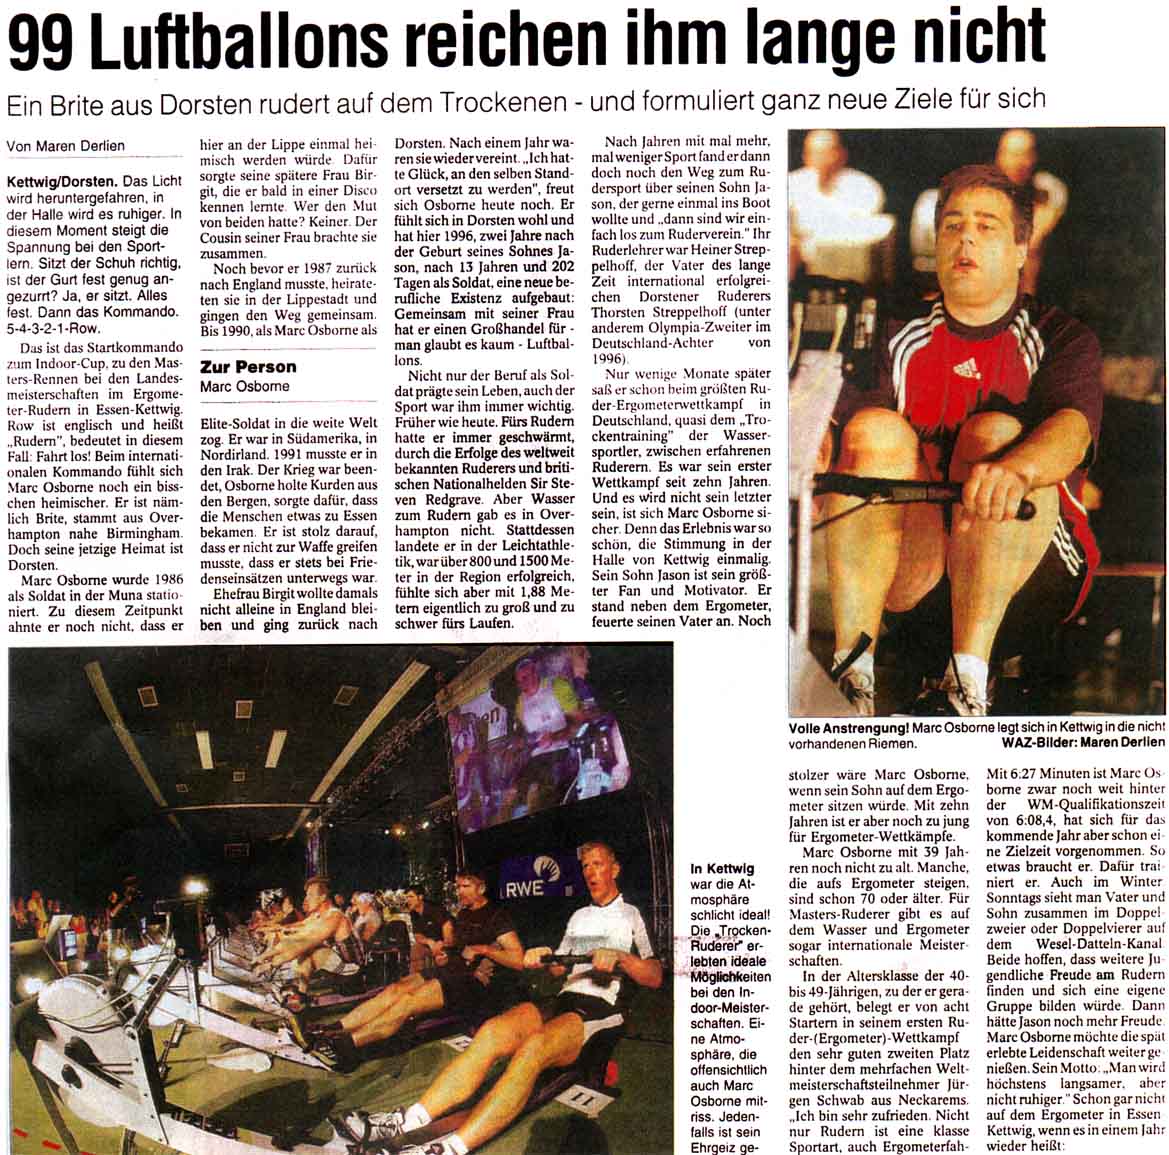 /php/..//presse/20050205_waz_99_luftballons_reichen_ihm_lange_nicht.jpg